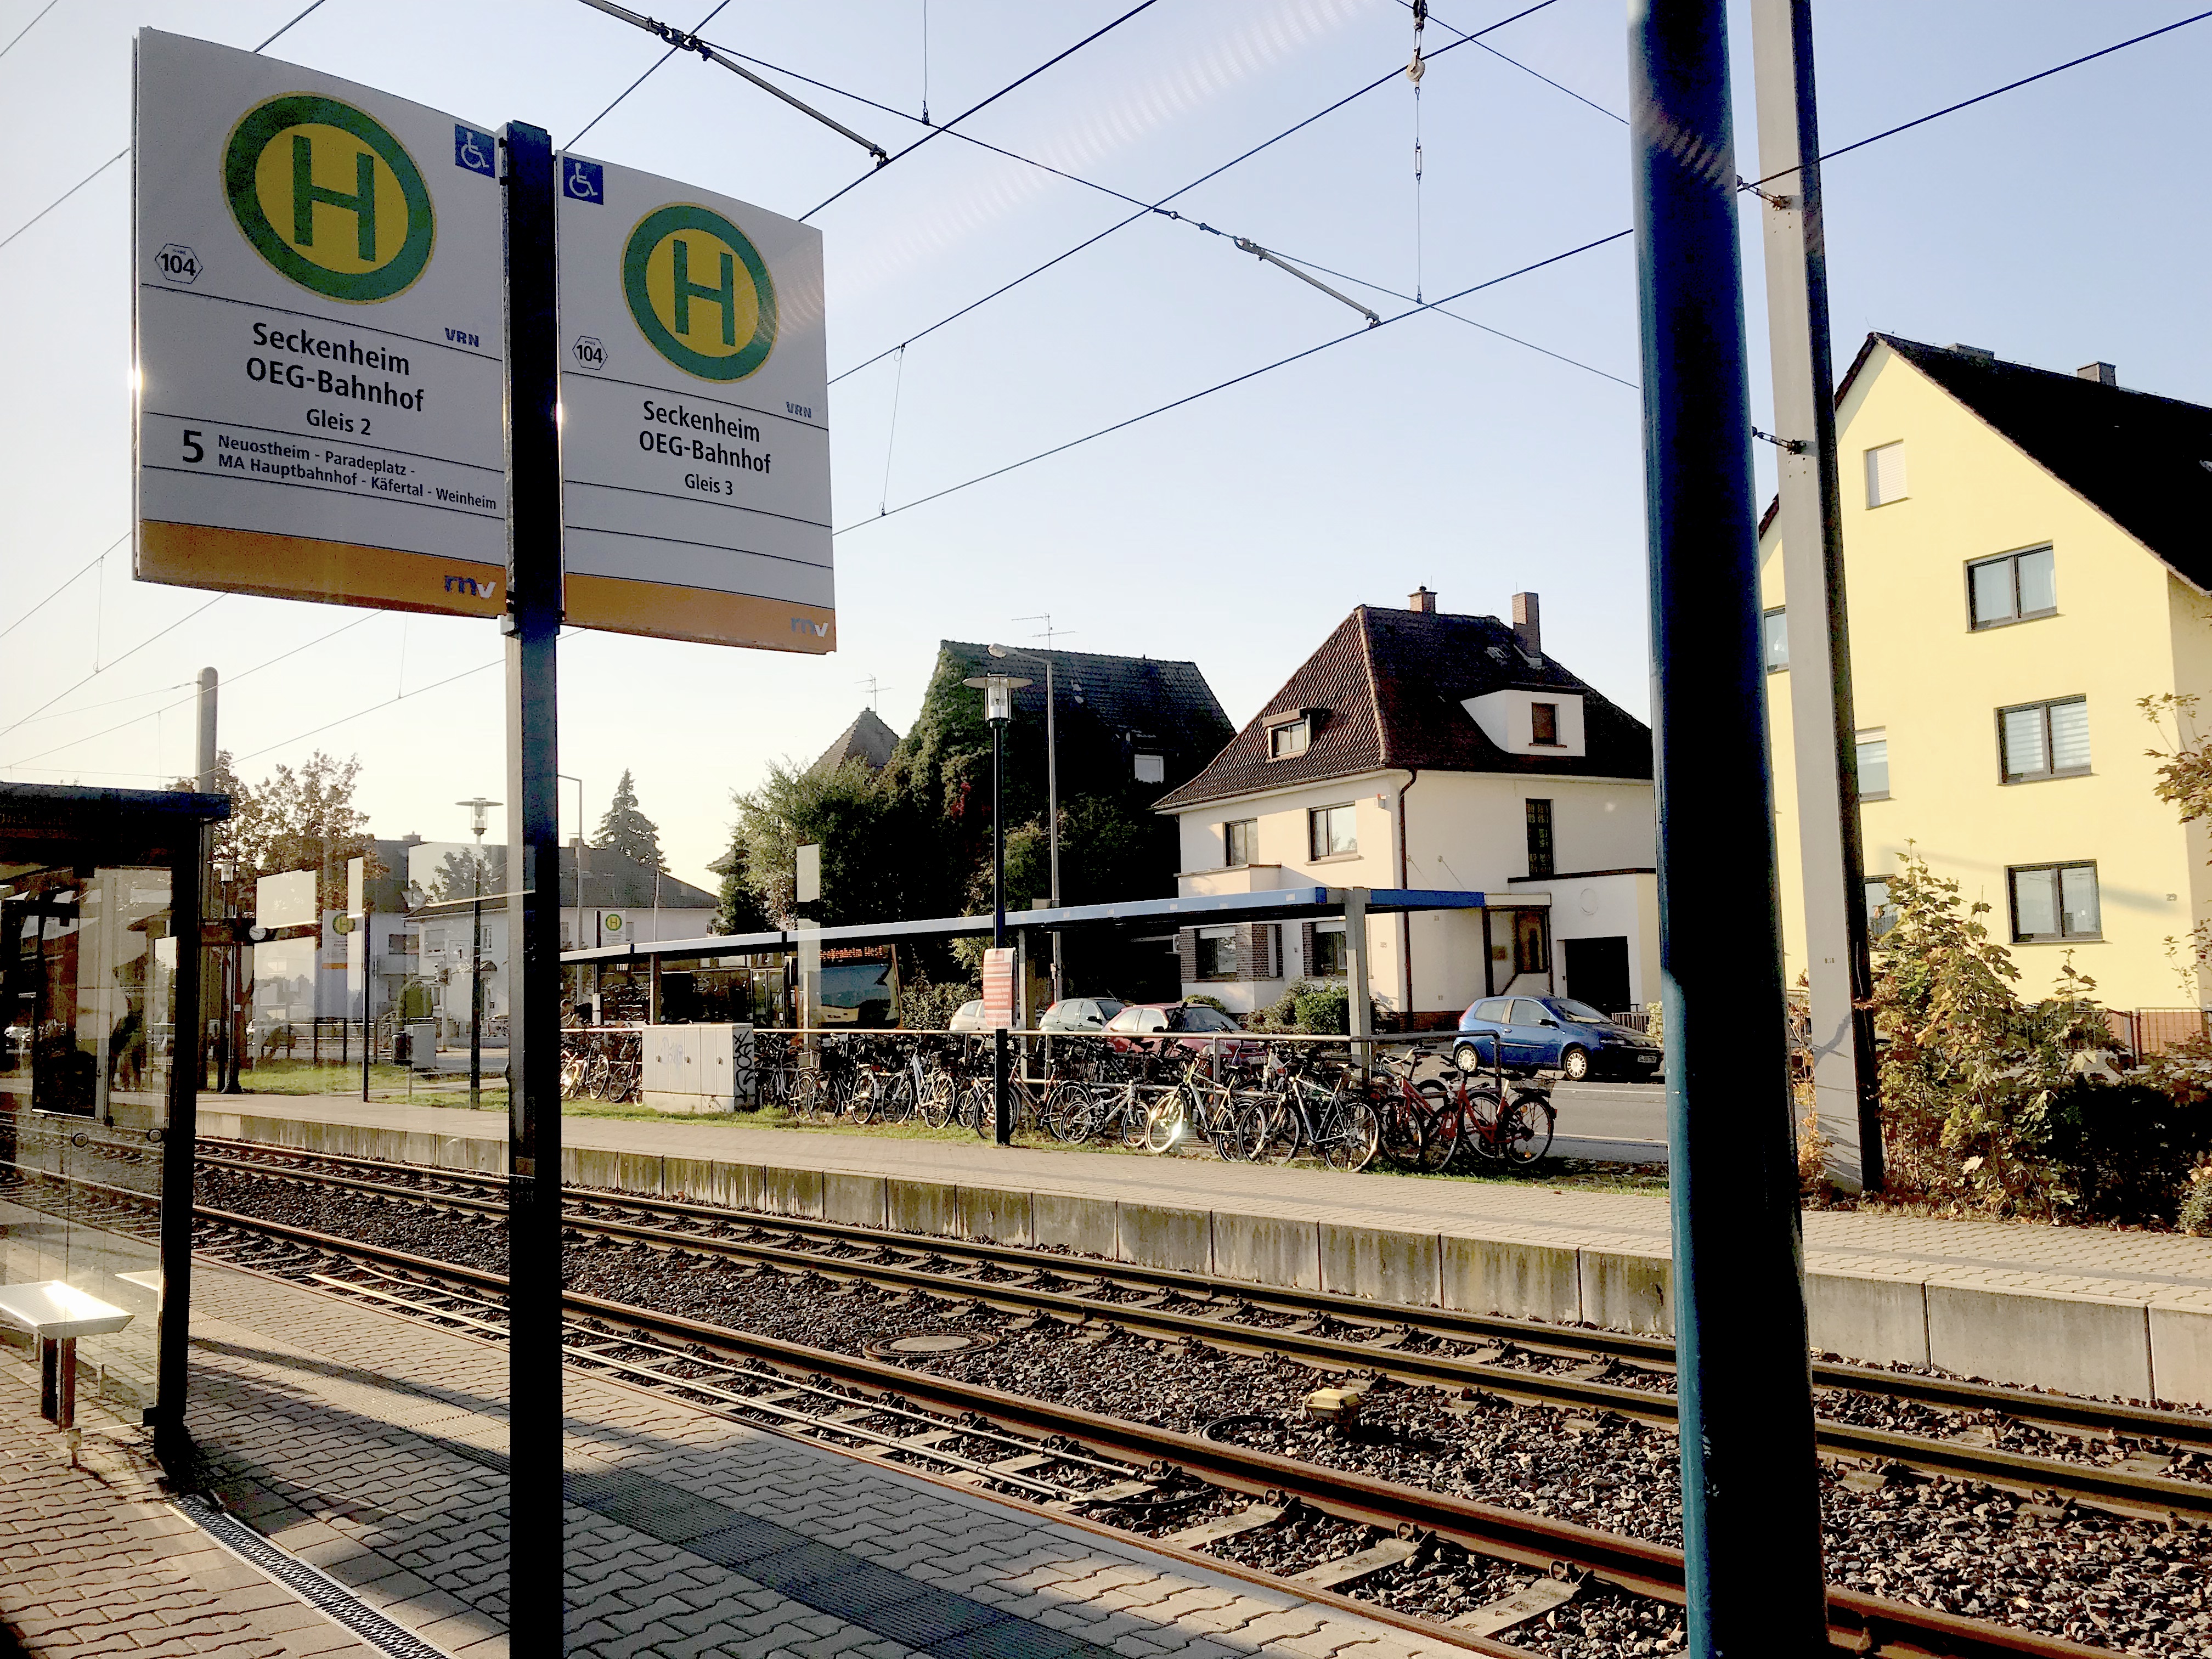 Datei:Seckenheim OEG-Bahnhof.jpg